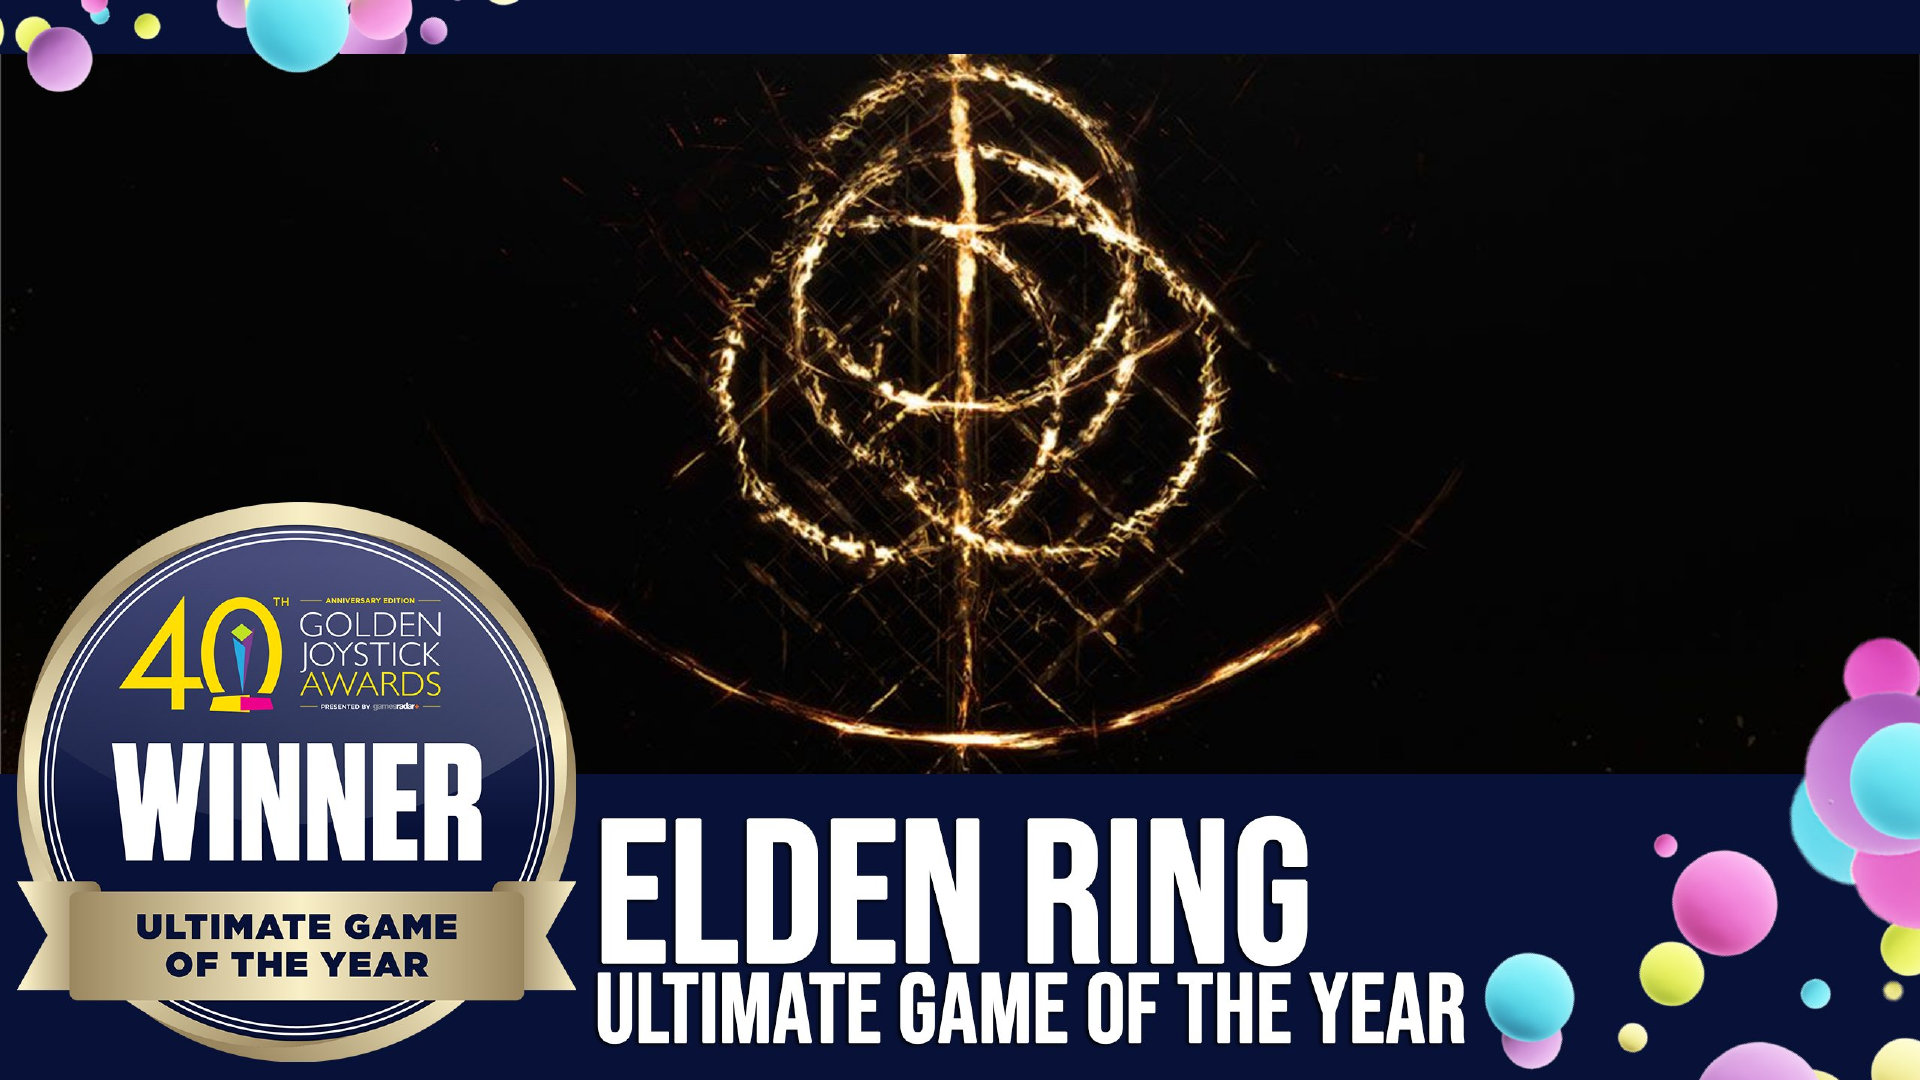 《艾尔登法环》获金摇杆年度最佳游戏 《原神》获最佳持续游玩奖